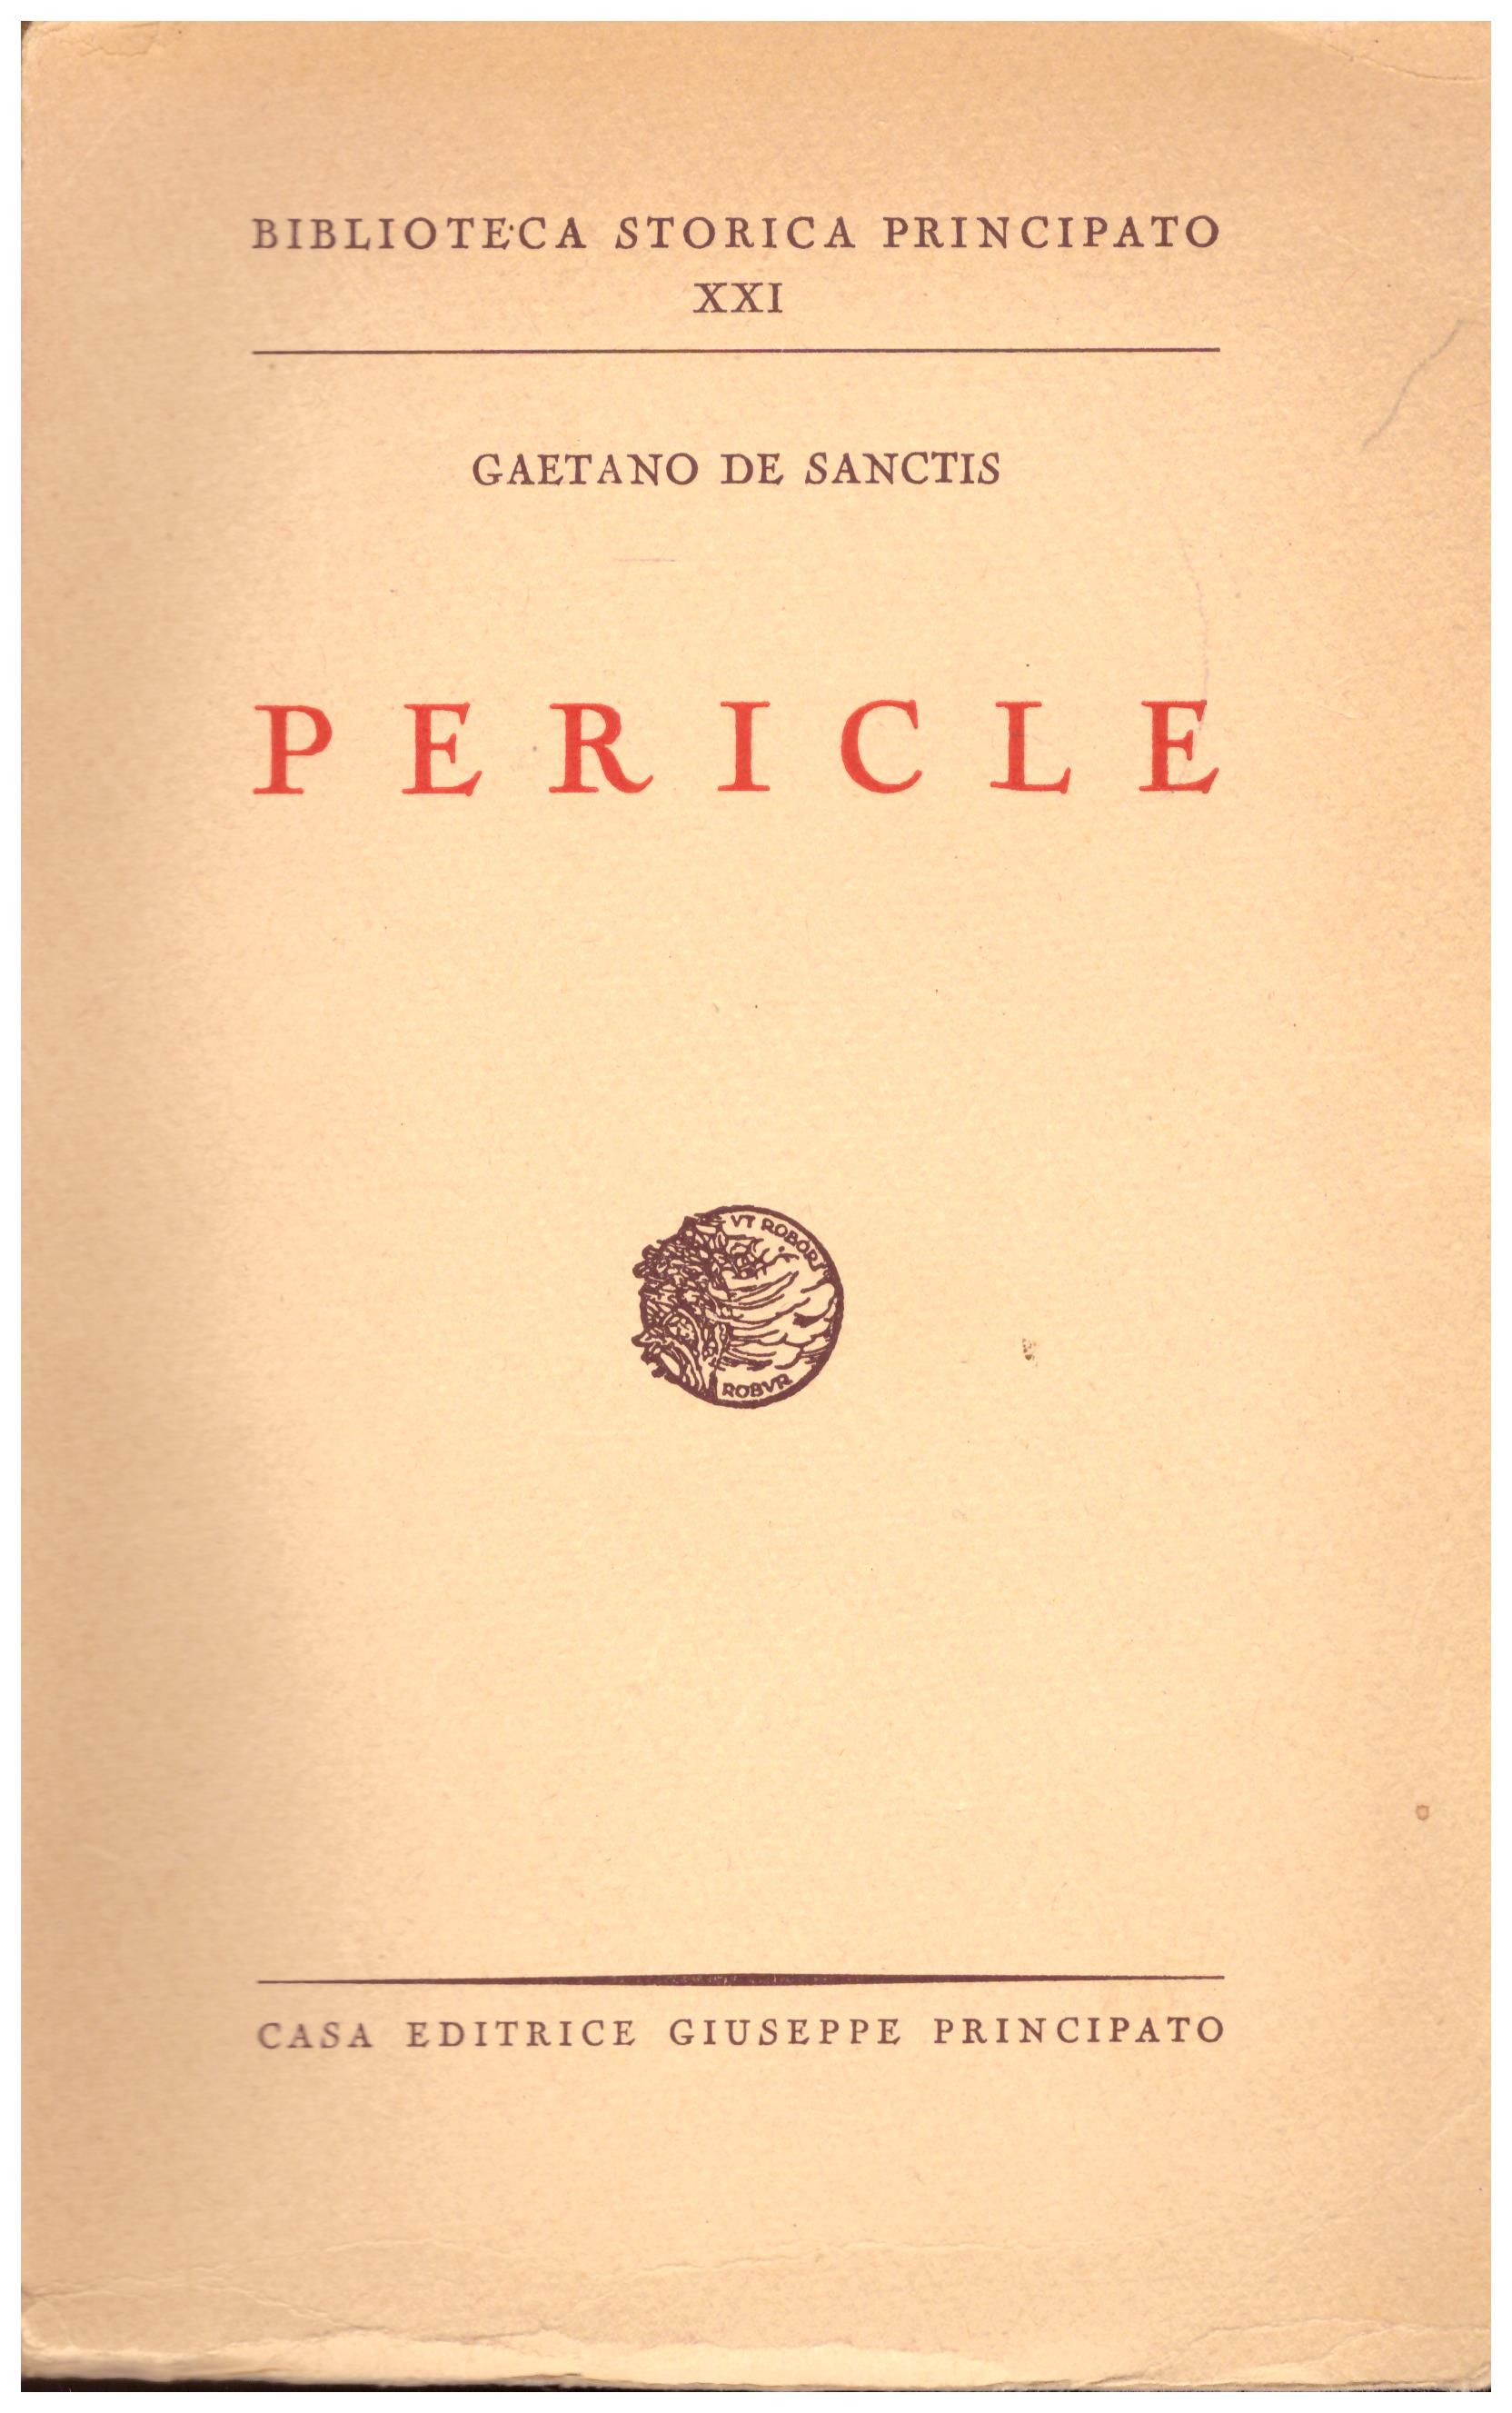 Titolo: Biblioteca Storica Principato XXI, Pericle  Autore : Gaetano De Sanctis  Editore: Casa Editrice Giuseppe Principato